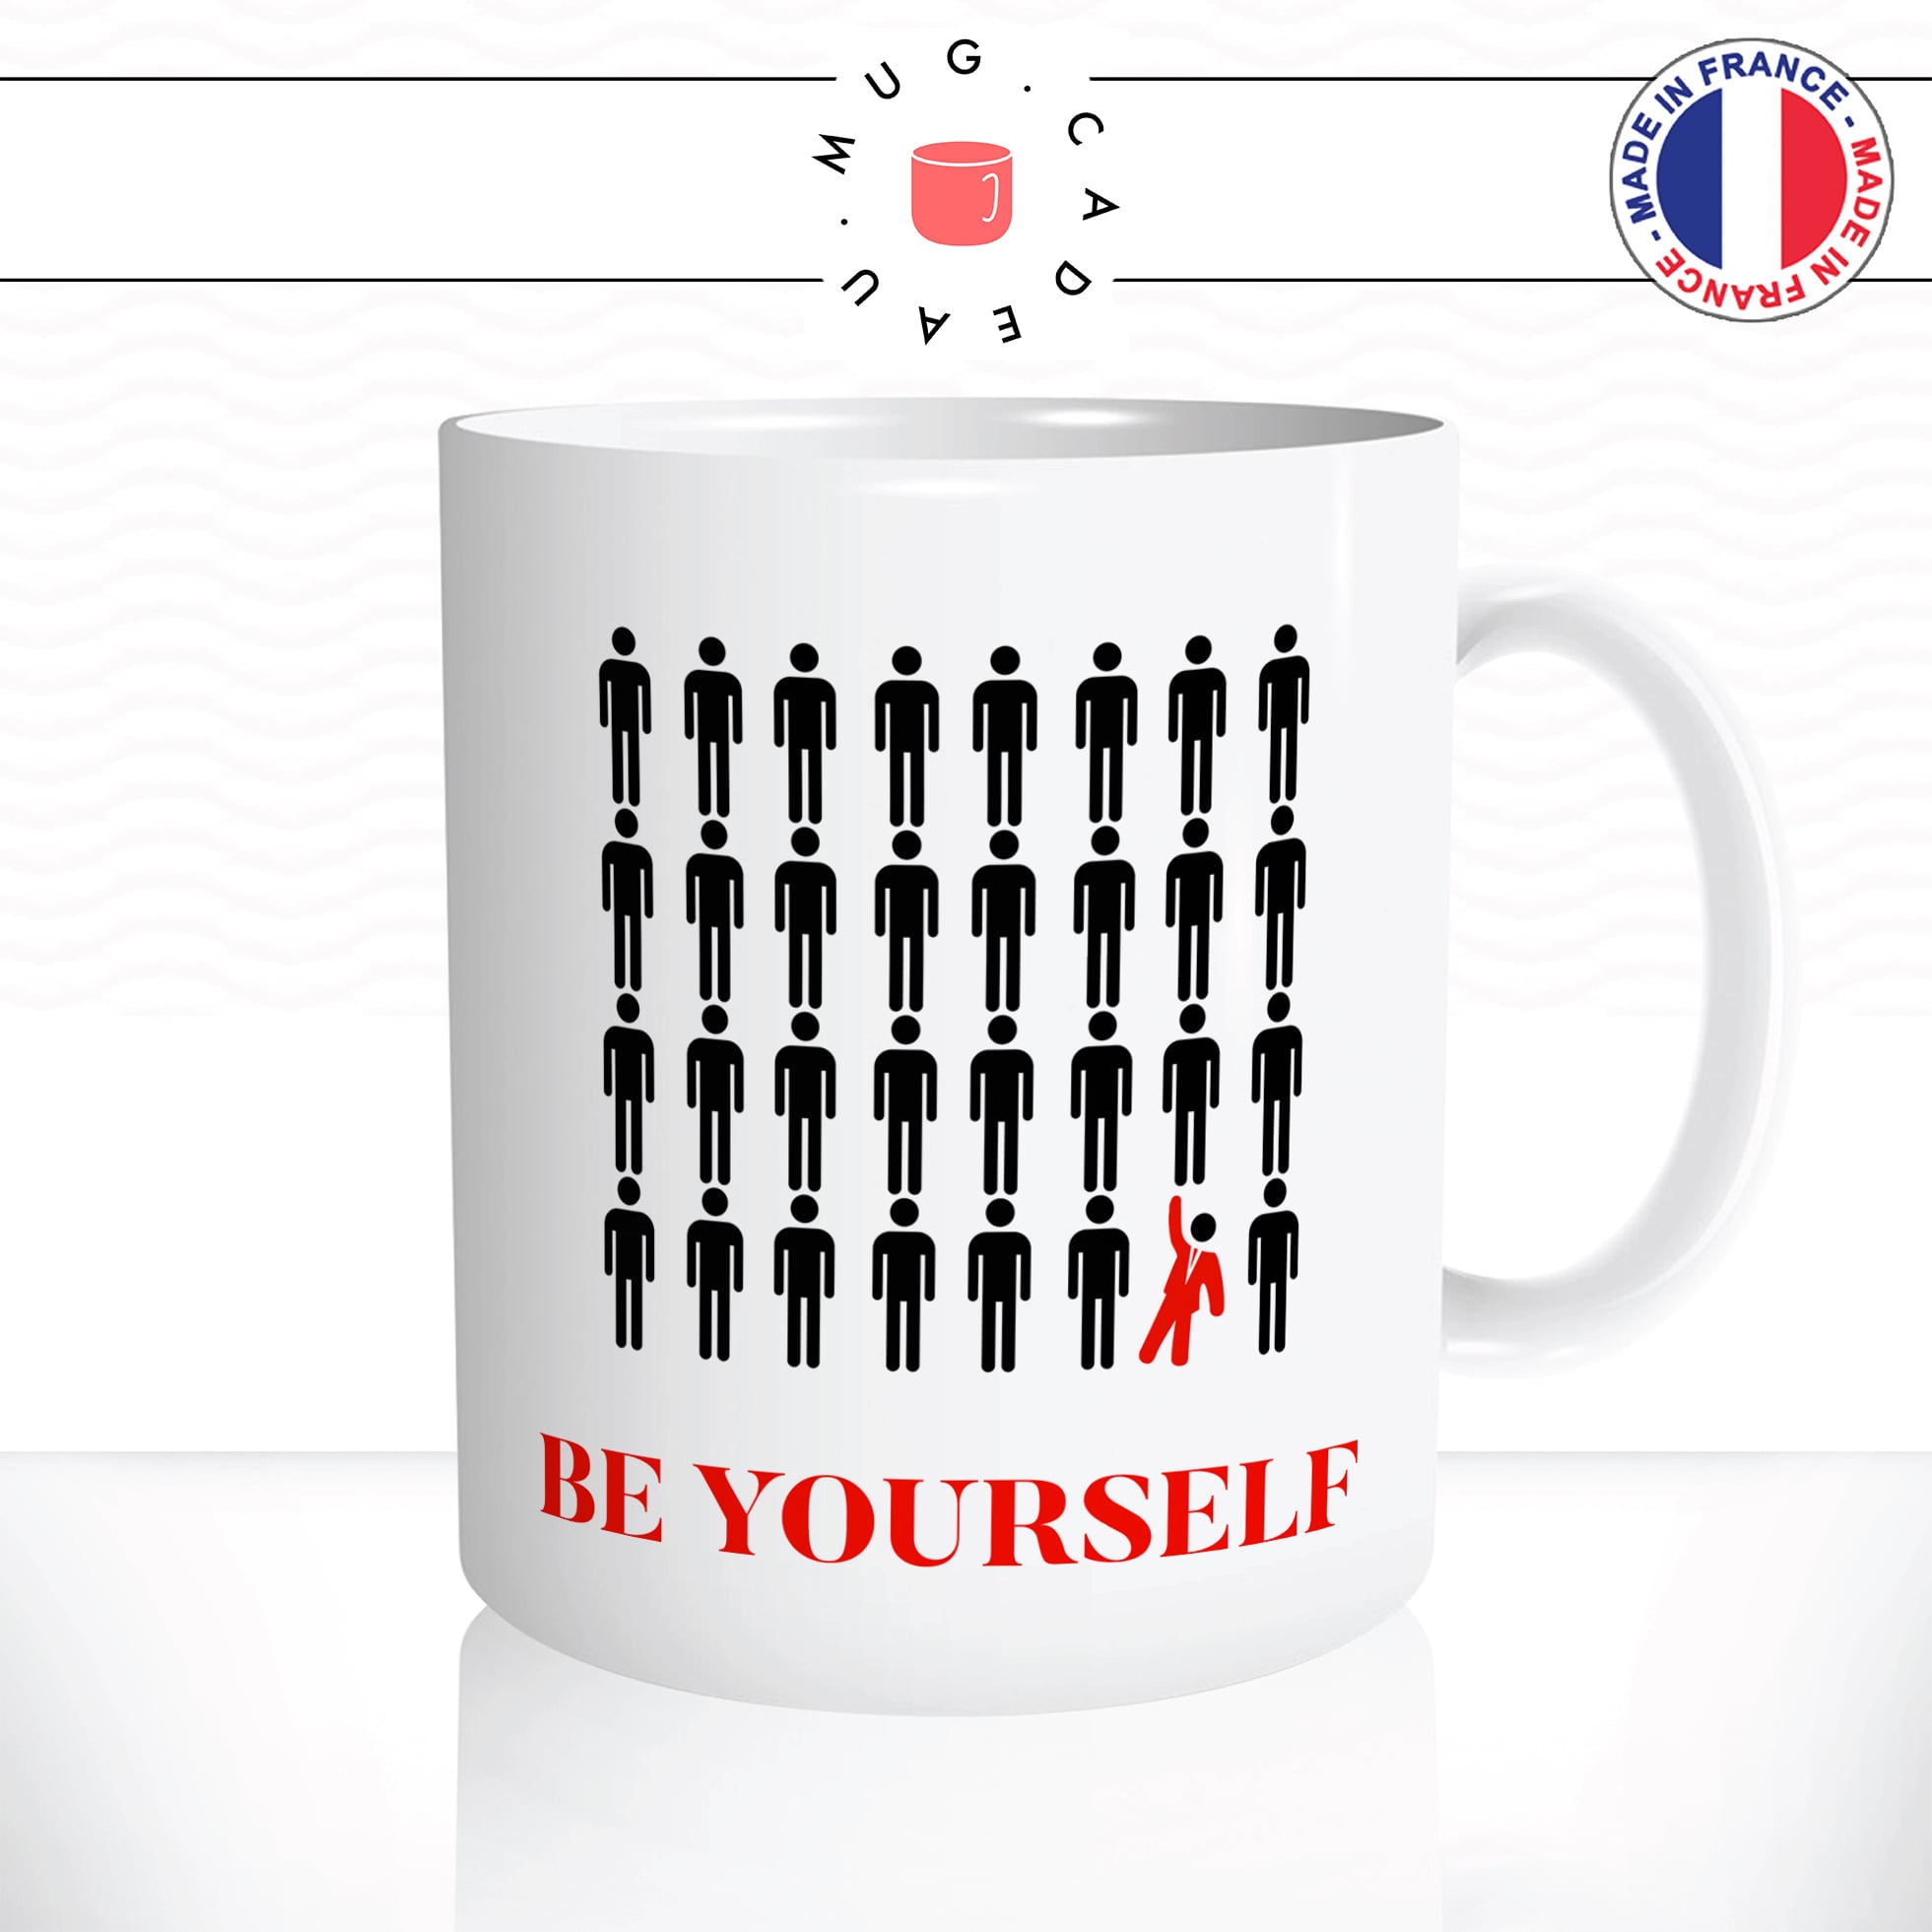 mug-tasse-be-yourself-bonhomme-toilettes-wc-noir-smoking-dance-rouge-humour-fun-drole-idée-cadeau-original-café-thé-personnalisée2-min